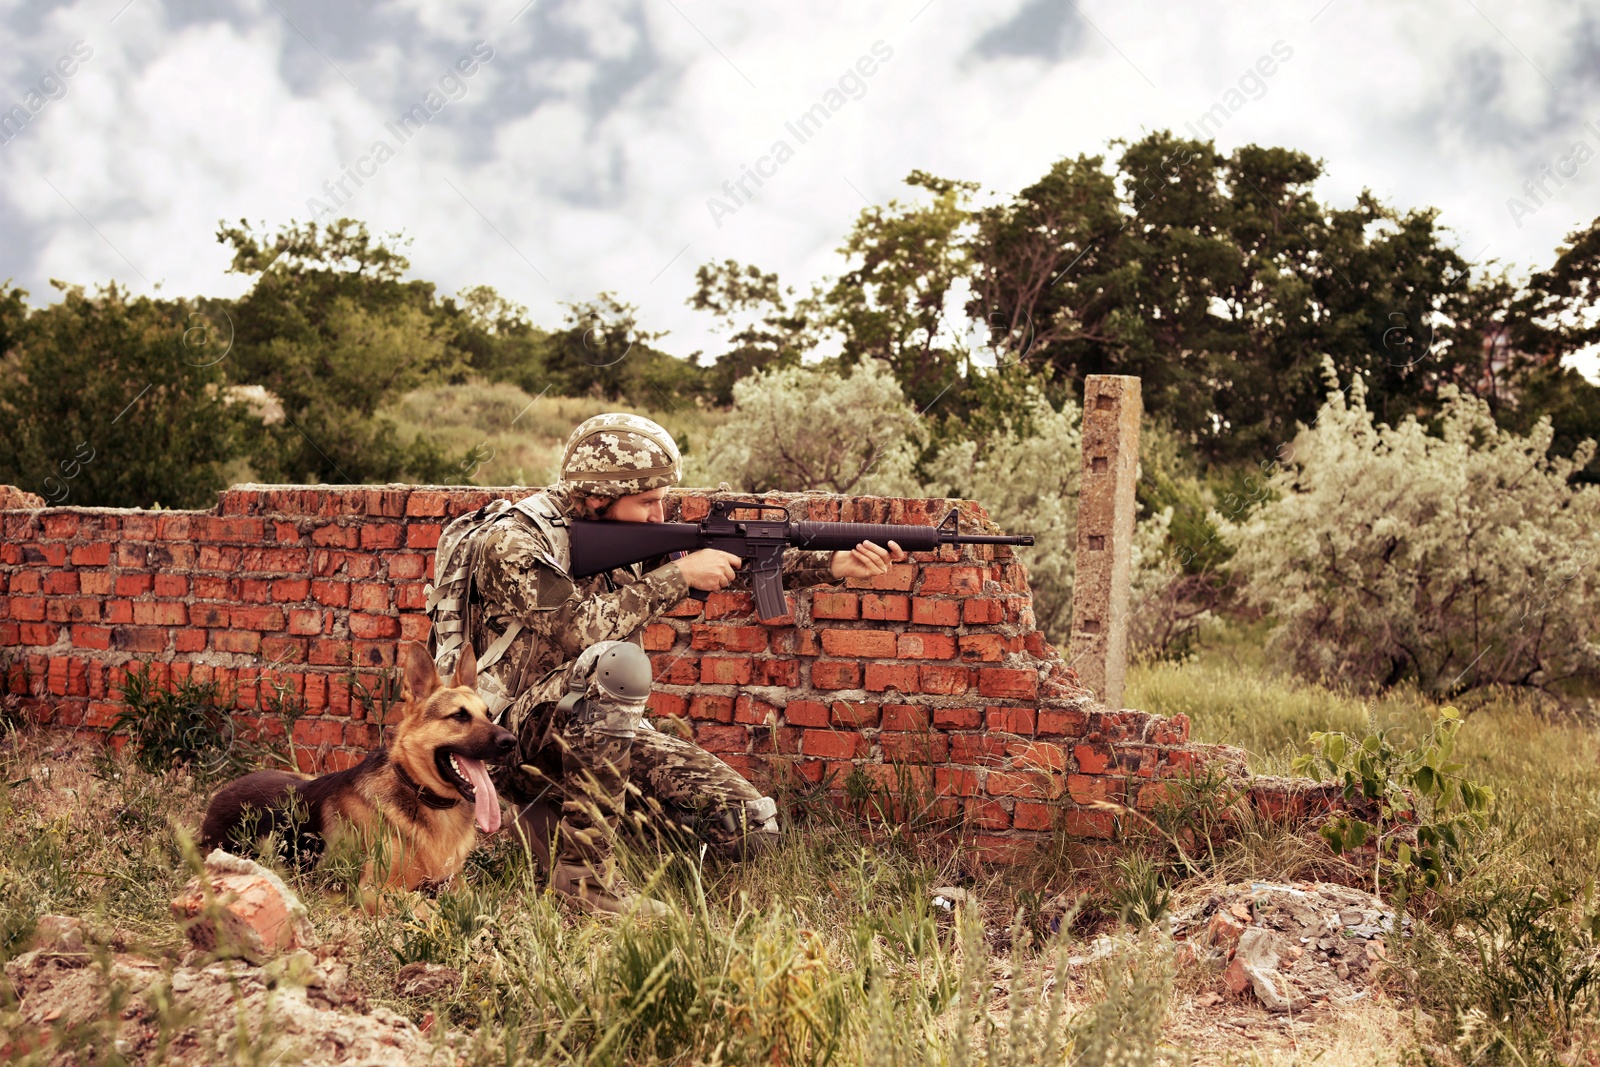 Image of Man in military uniform with German shepherd dog at firing range